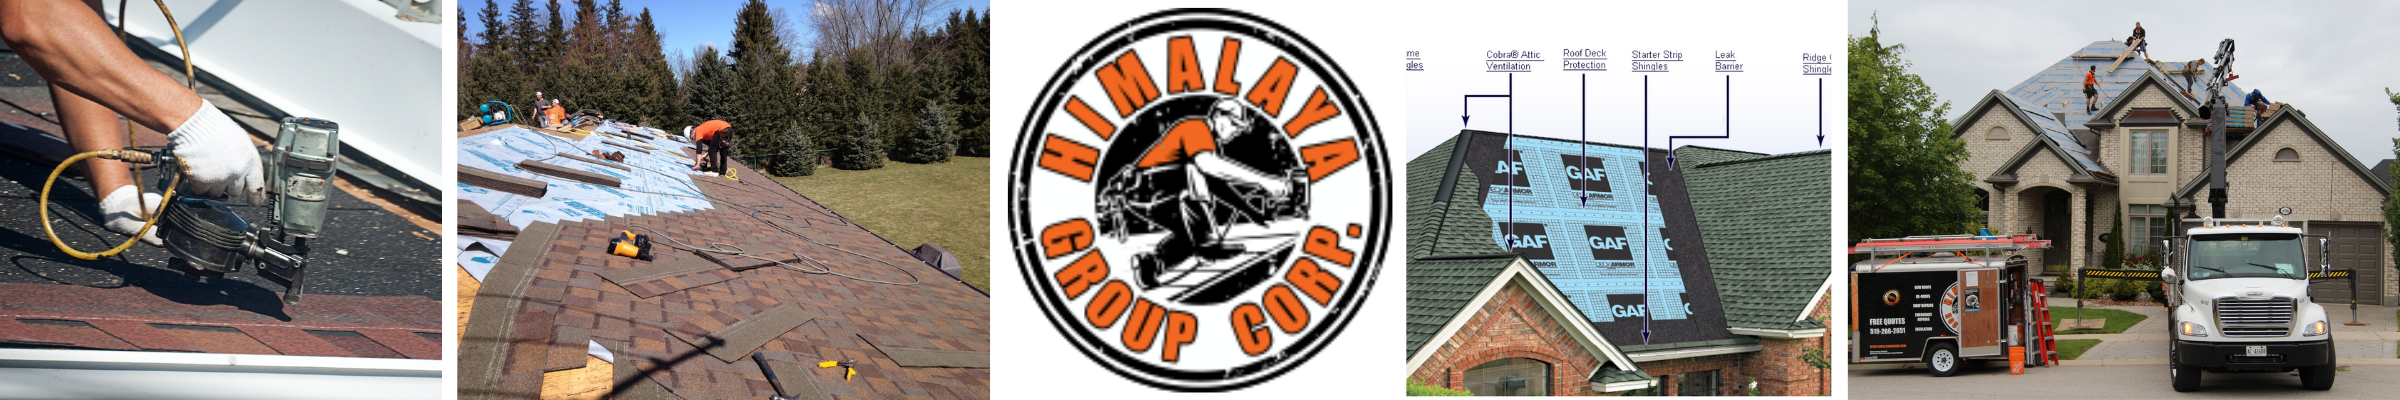 Himalaya Group Corp